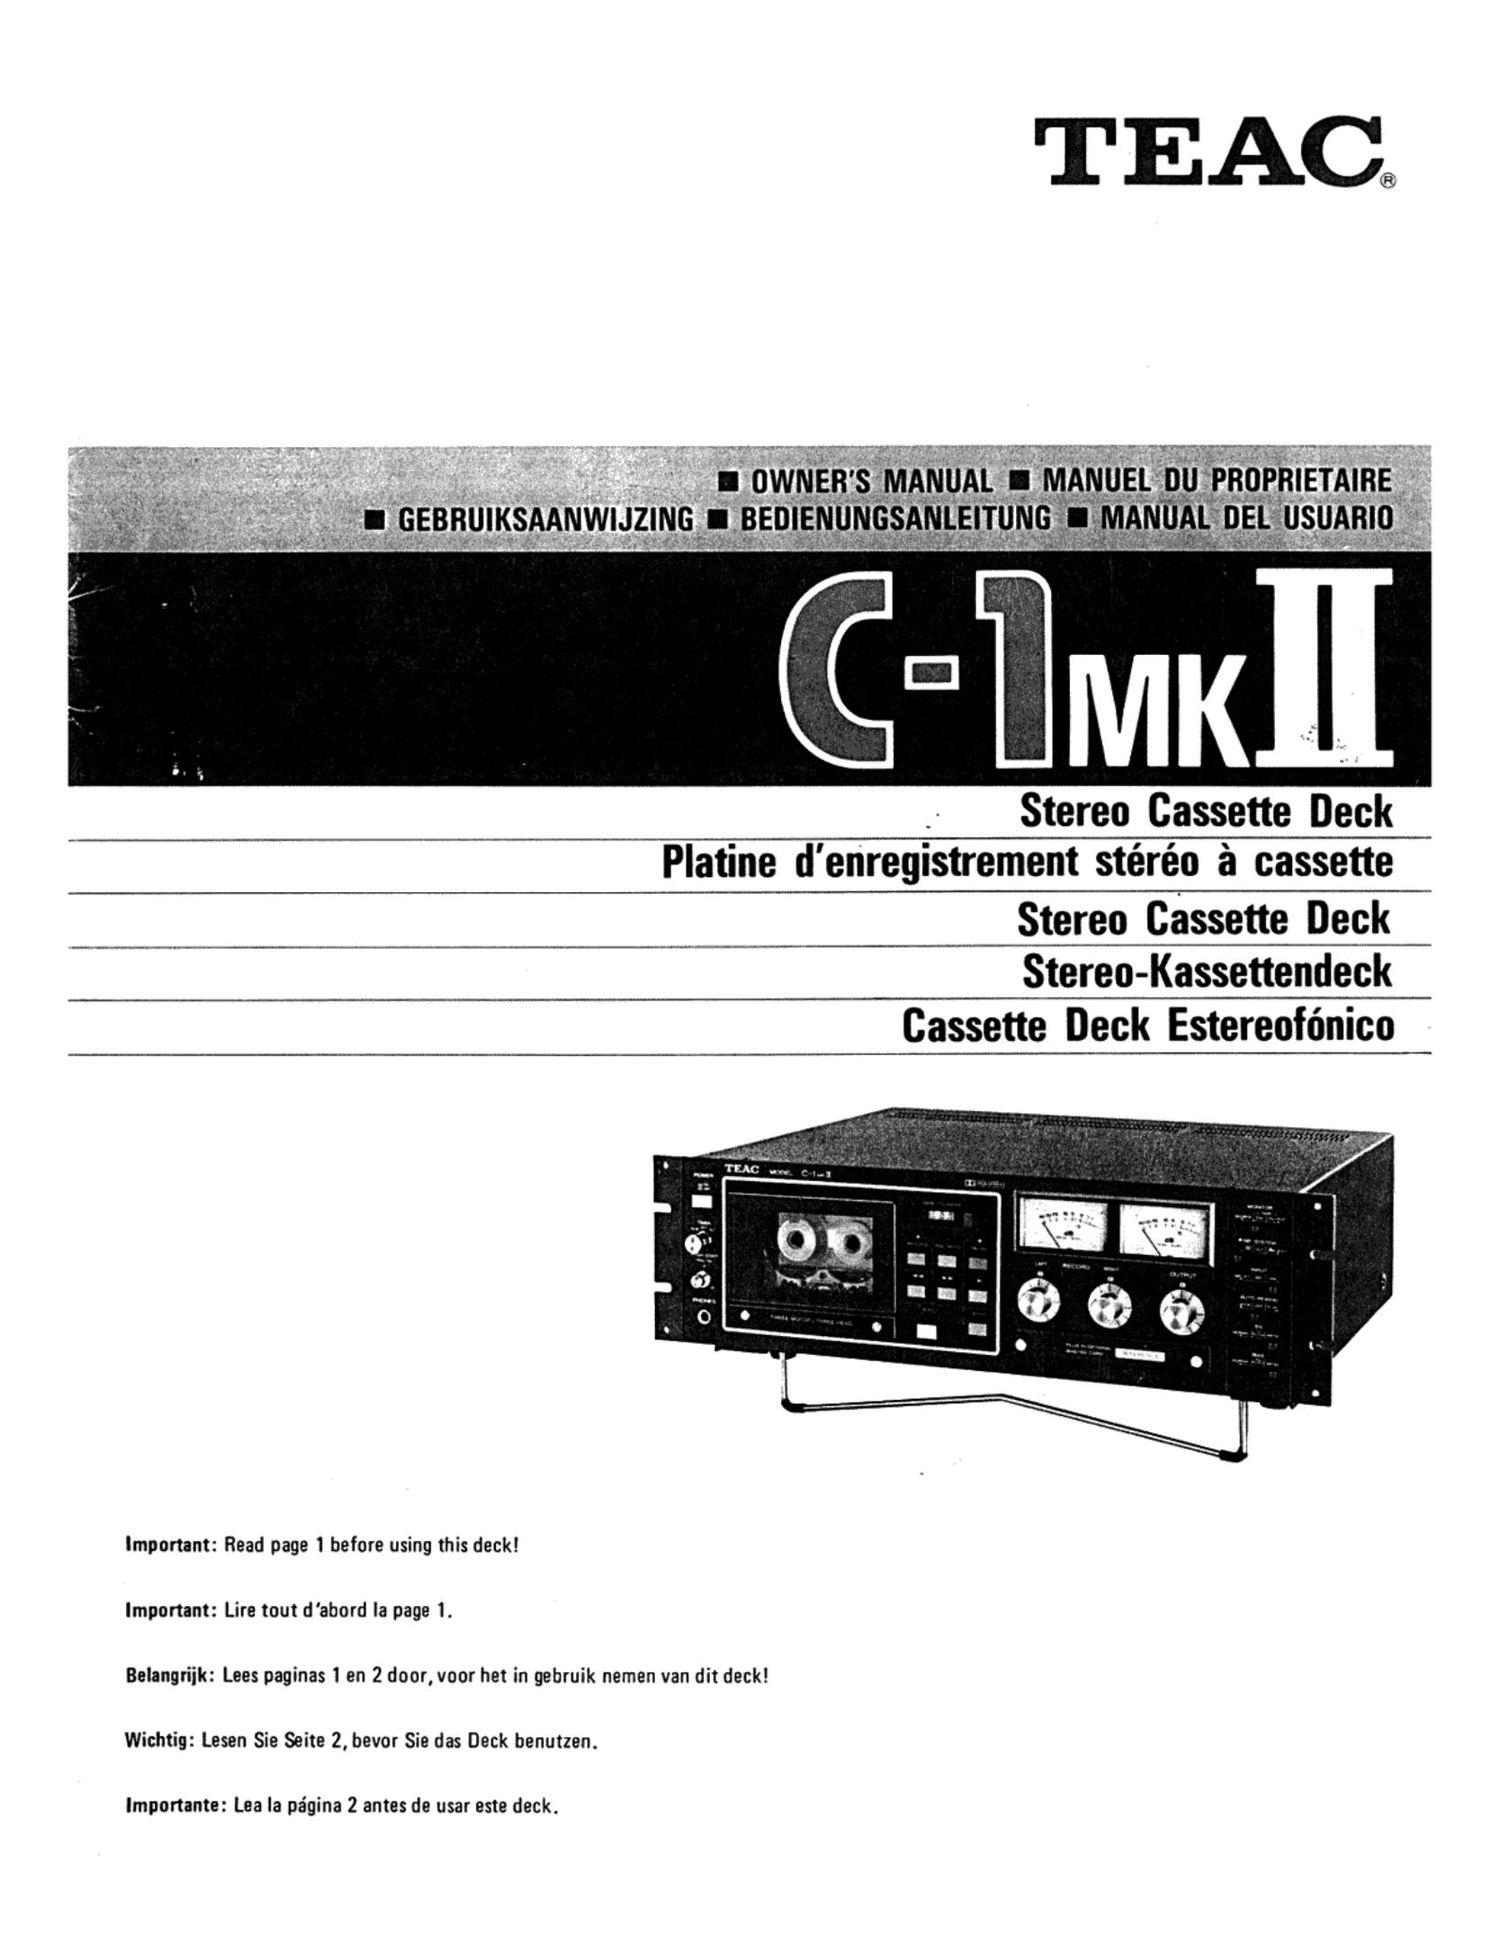 Teac C 1 Mk2 Owners Manual